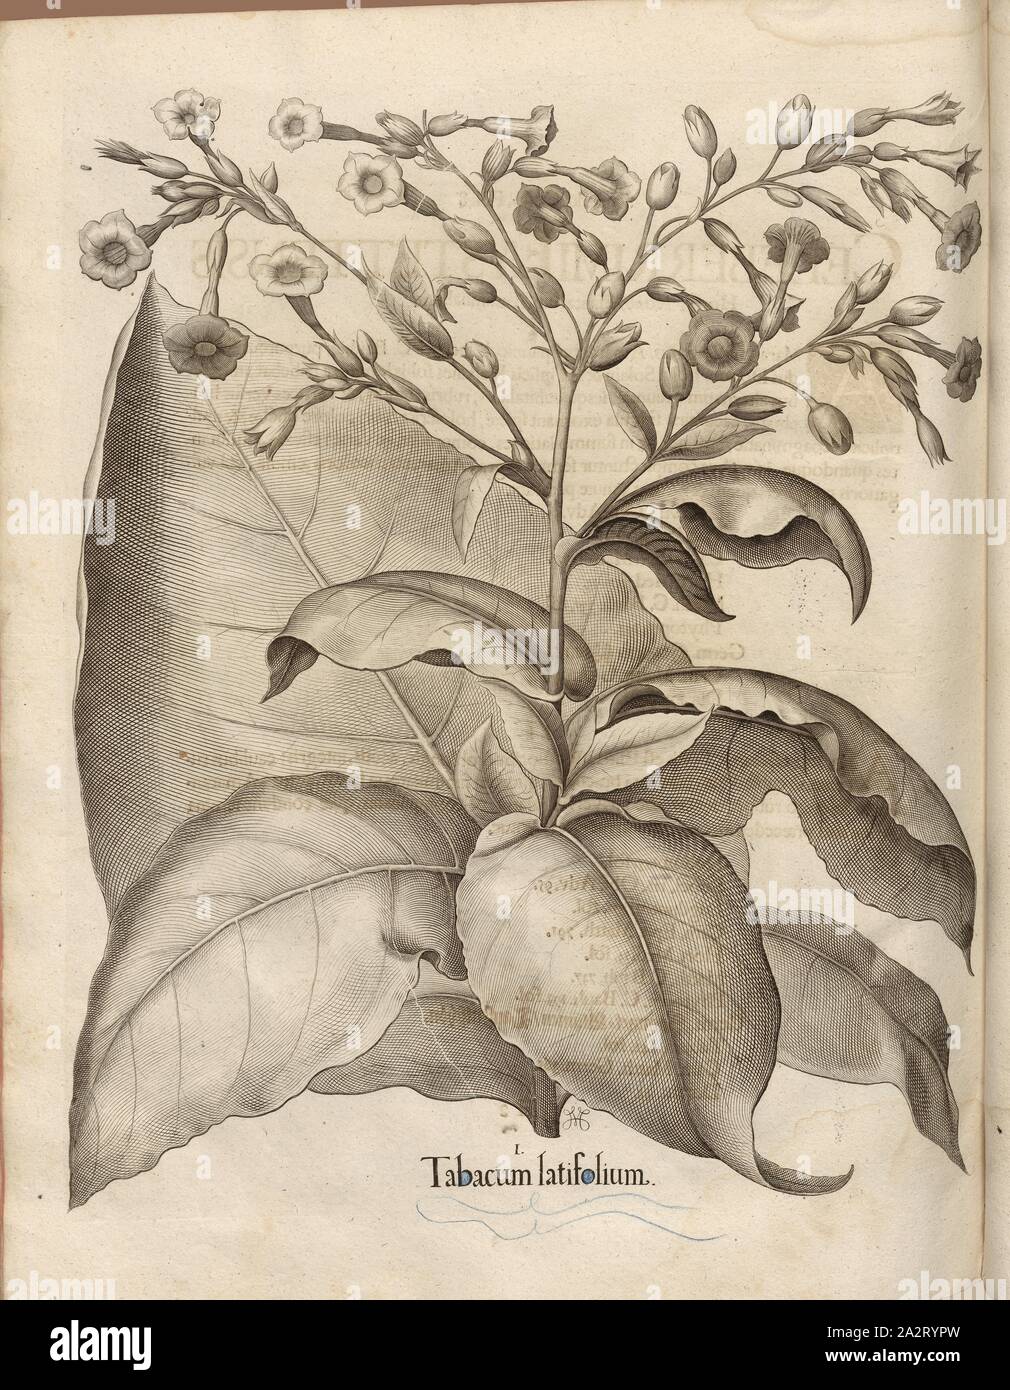 Firma latifolium, Tabak, Kupferstich, S. 760, Besler, Basilius; Jungermann, Ludwig, 1713, Basilius Besler: Hortus Eystettensis (...). Nürnberg, 1713 Stockfoto